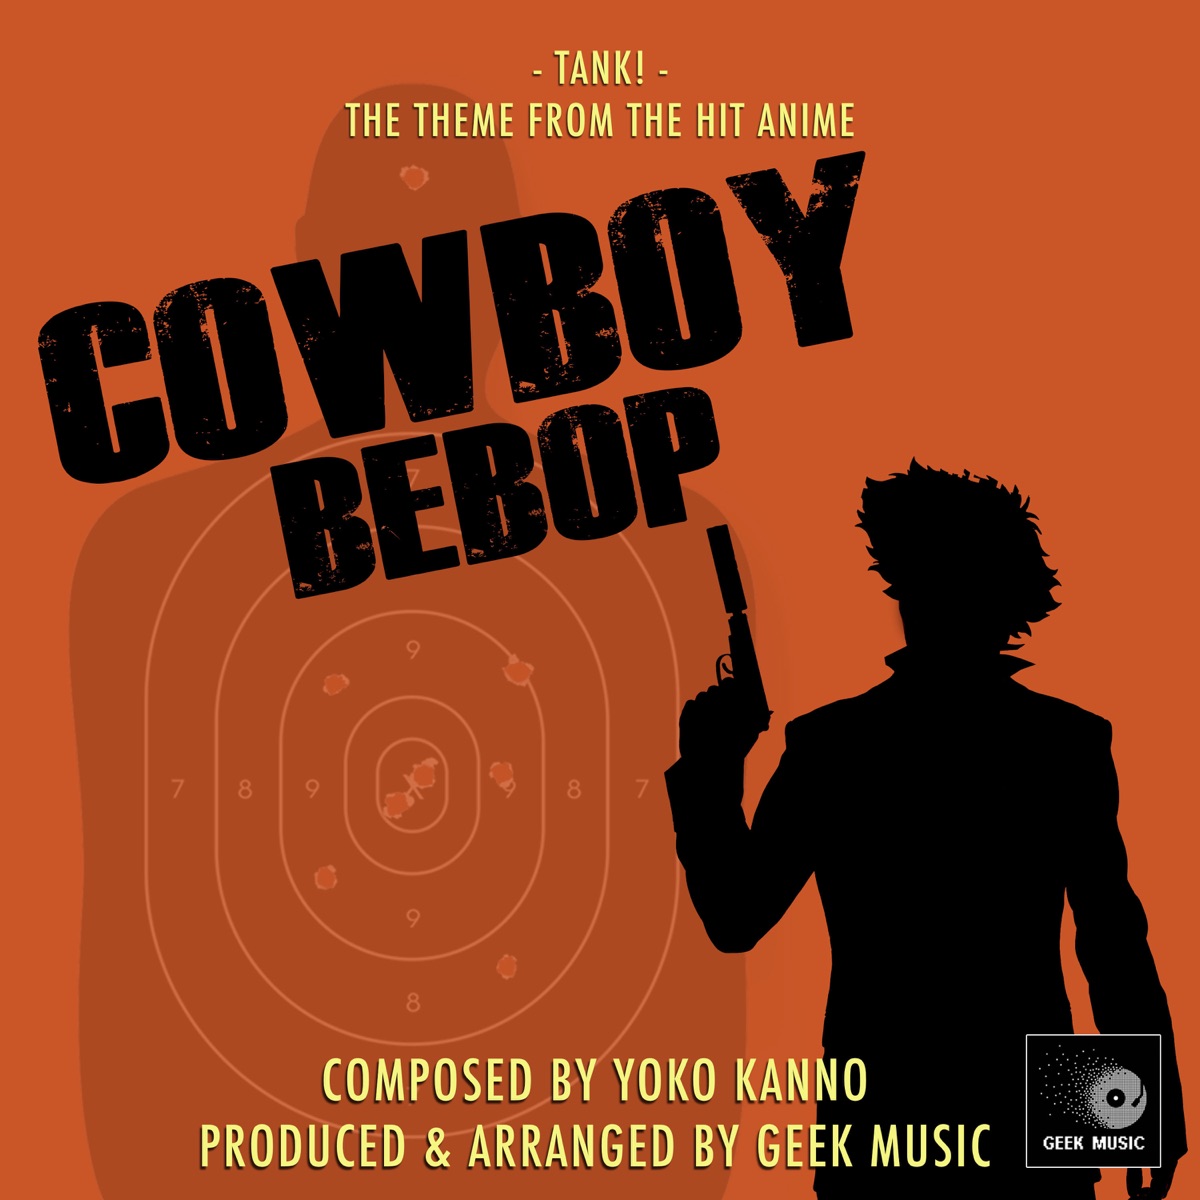 cowboy bebop full series download